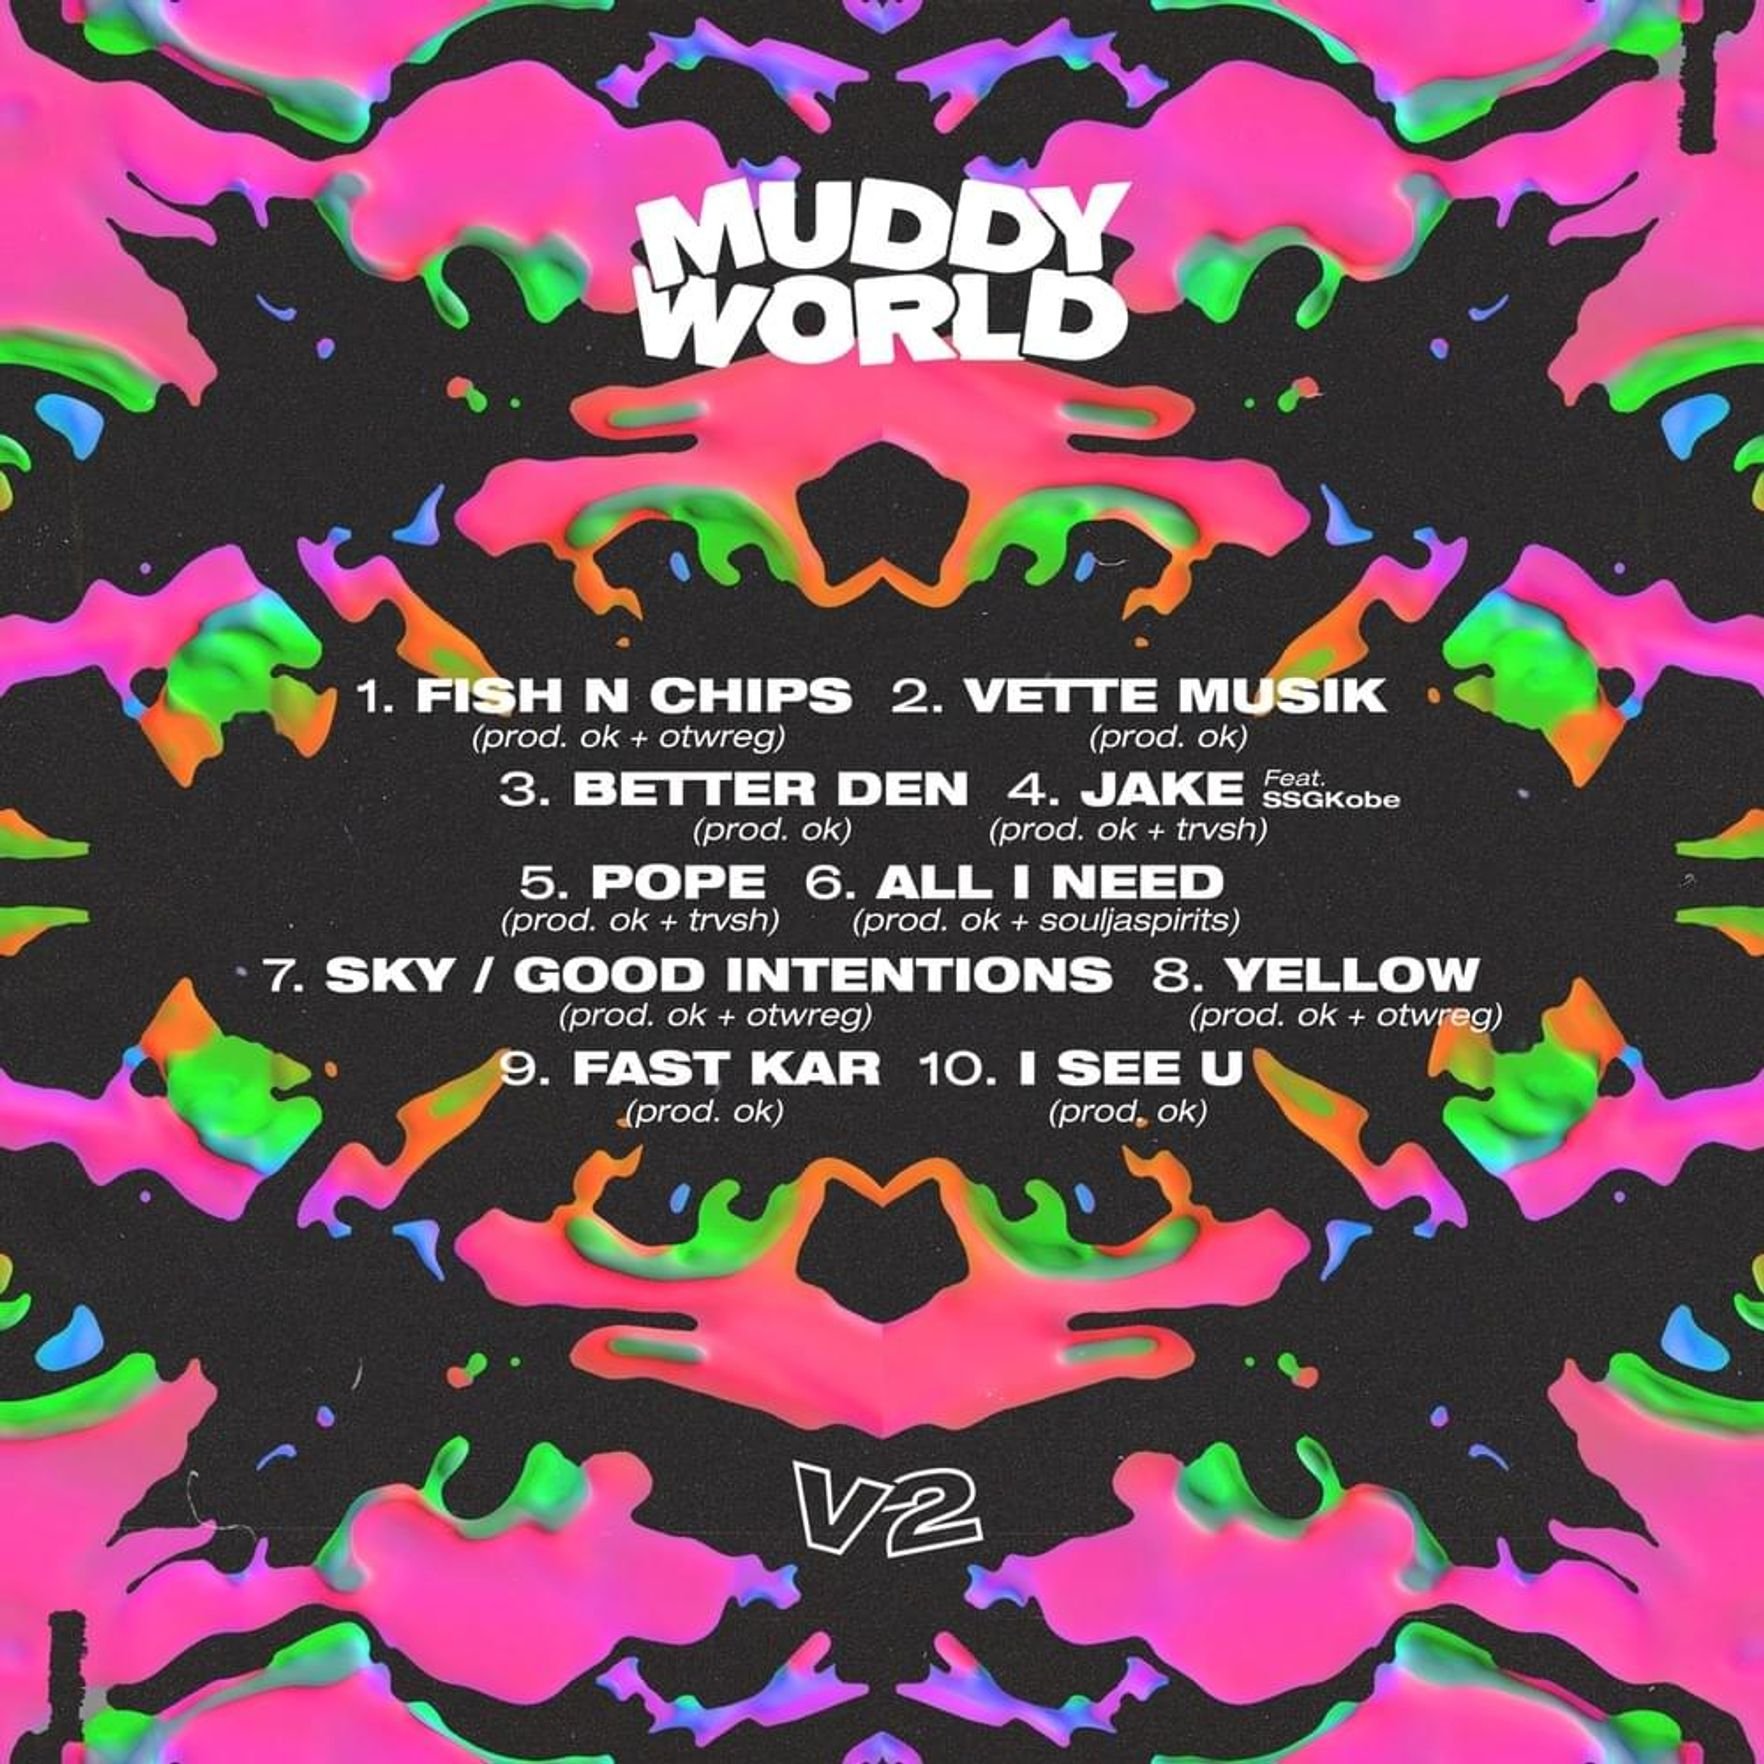 MuddyMya - MUDDYWORLD V2 Tracklist